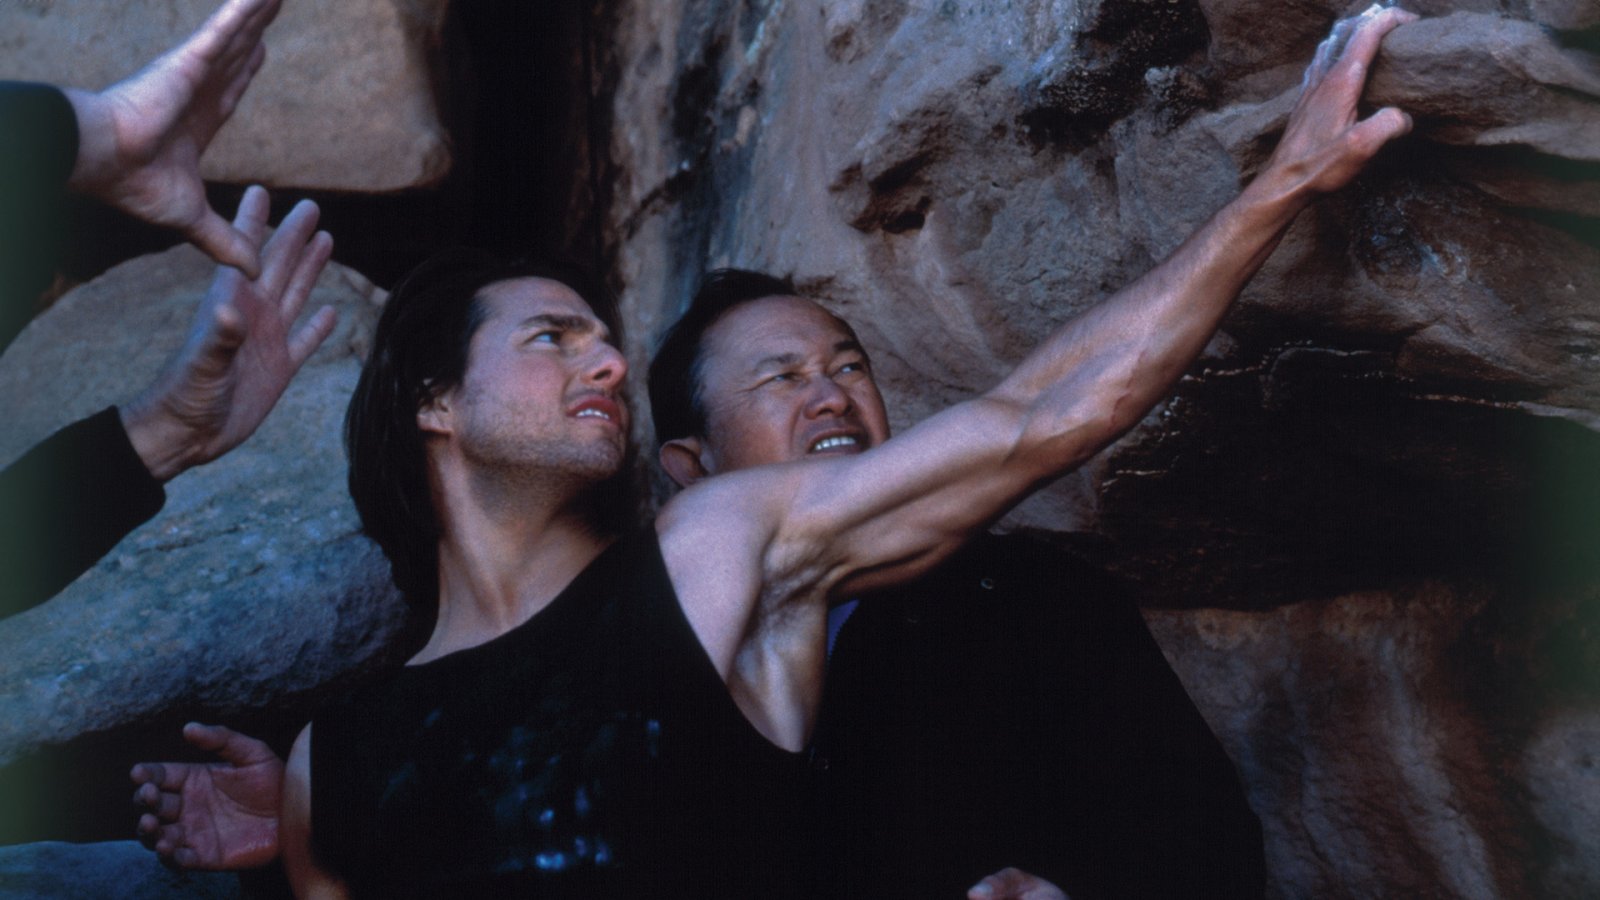 John Woo เมาท์ Tom Cruise หลั่งน้ำตาขอแสดงฉากเสี่ยงไม่พึ่งสตันท์ใน ‘Mission: Impossible II’